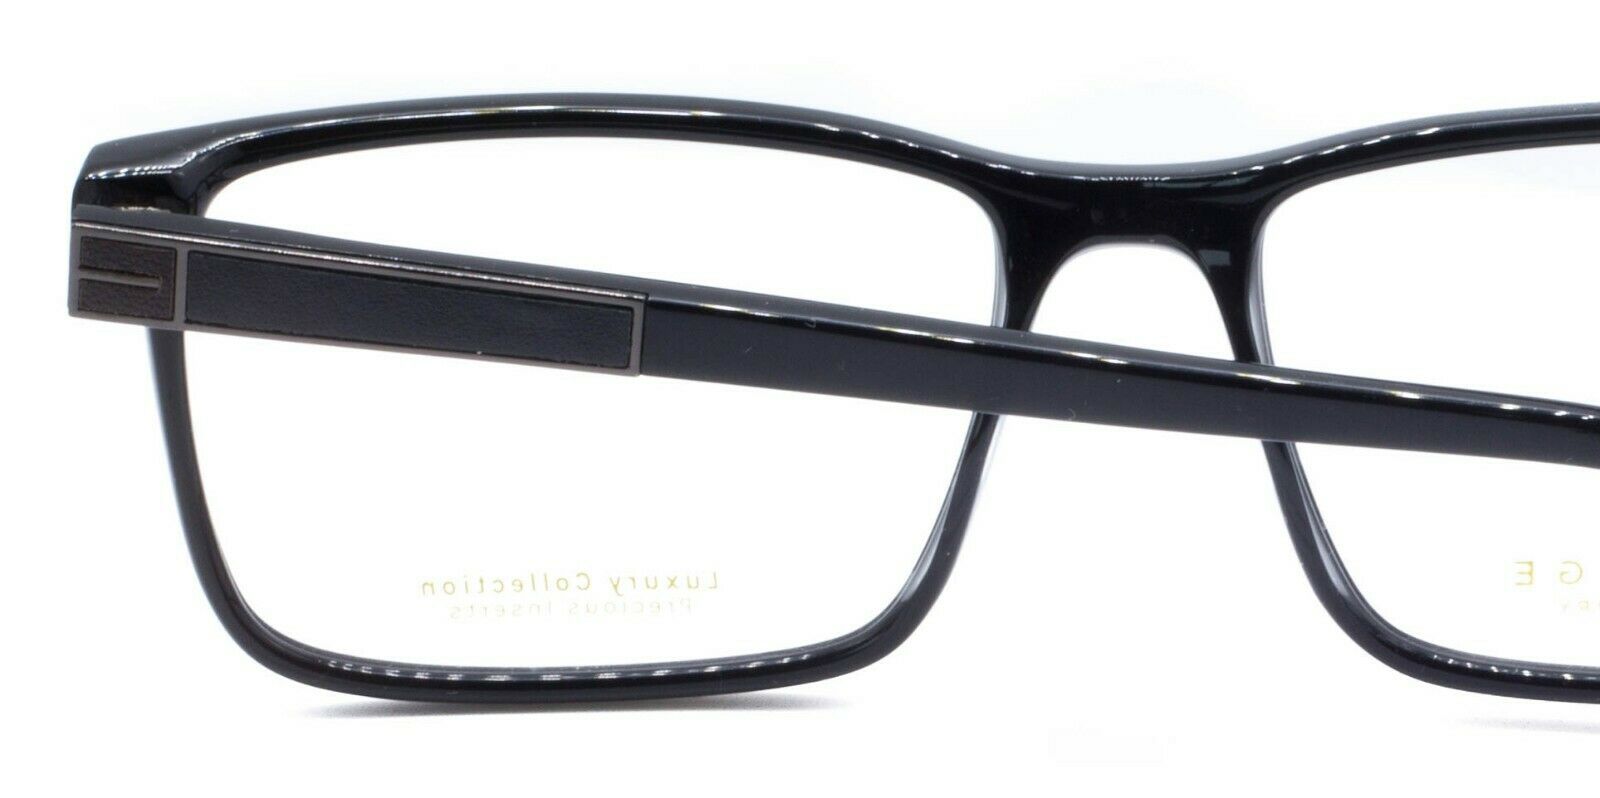 HERITAGE Iconic Luxury HEBM14 BG Eyewear FRAMES Eyeglasses RX Optical Glasses